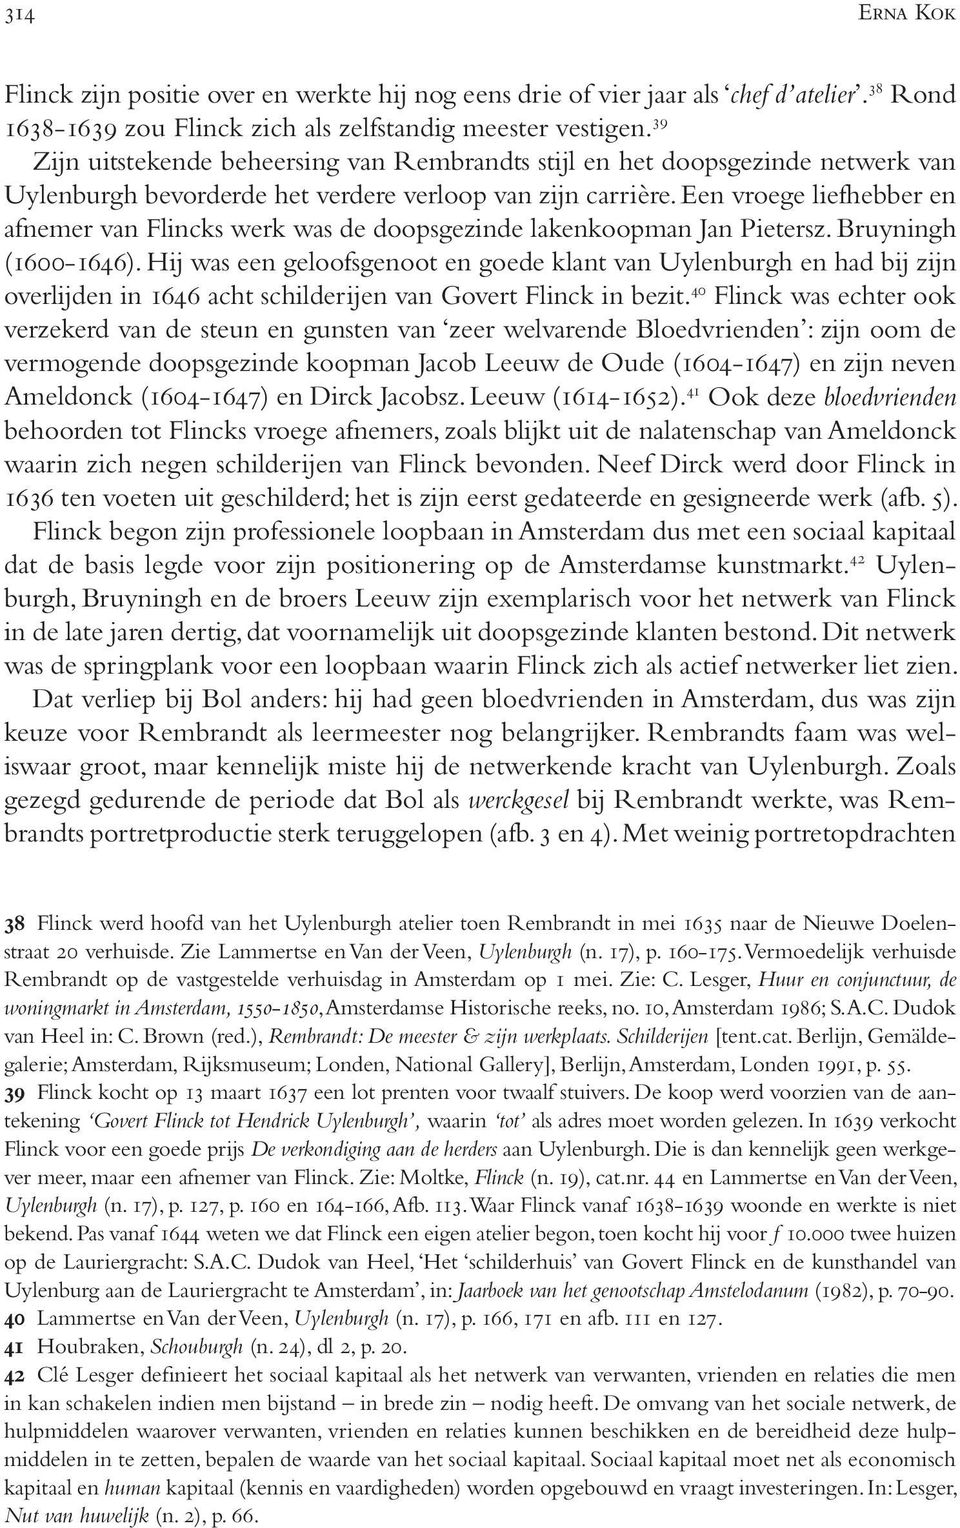 Een vroege liefhebber en afnemer van Flincks werk was de doopsgezinde lakenkoopman Jan Pietersz. Bruyningh (1600-1646).